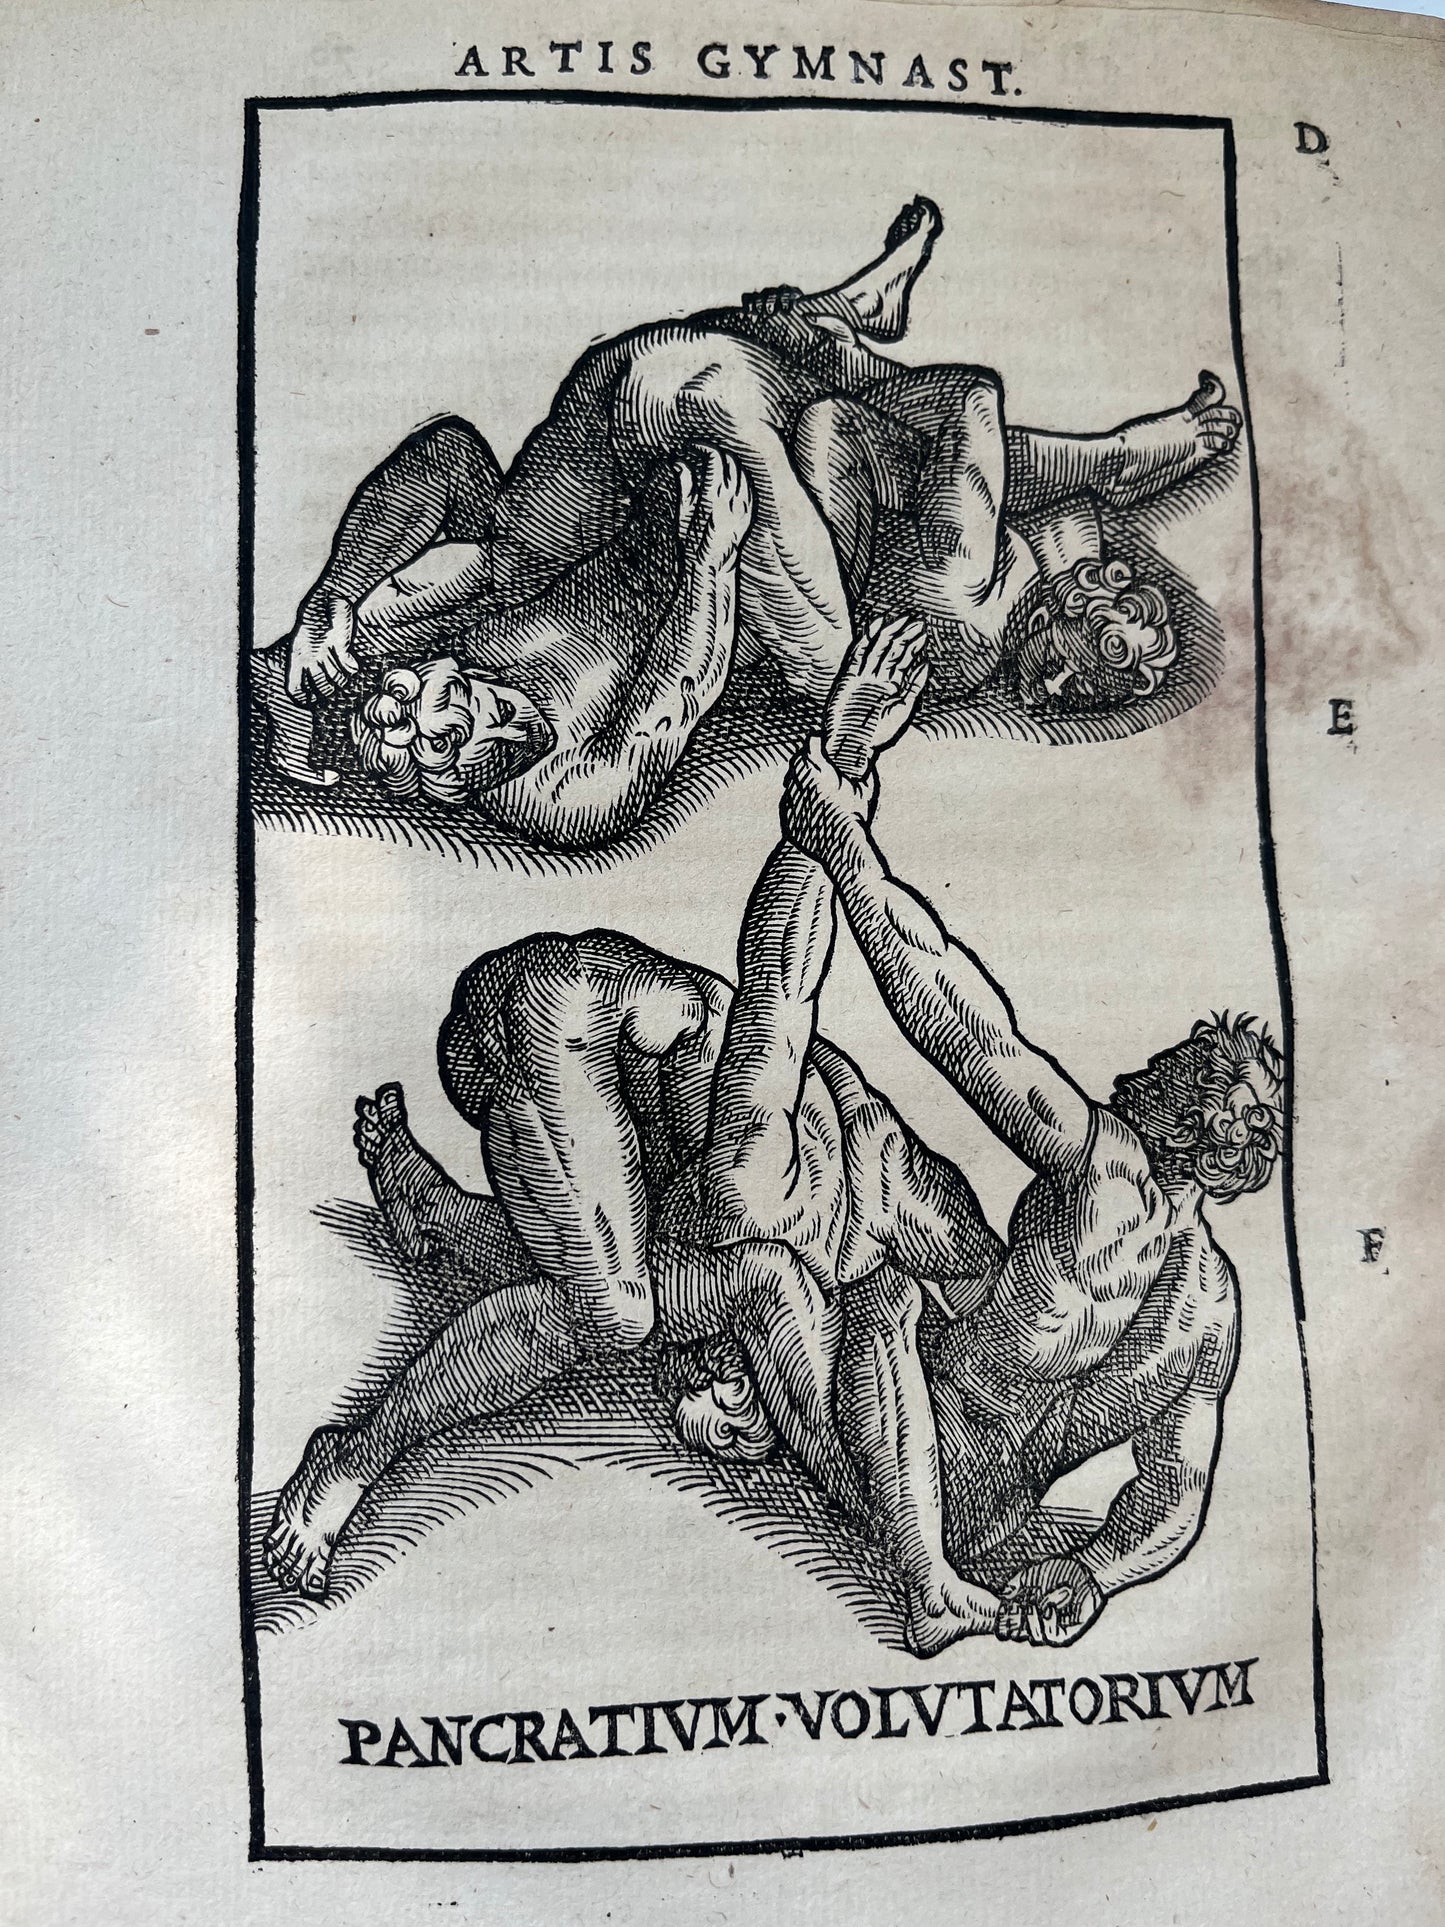 De arte gymnastica, libri sex - Girolamo Mercuriale - 1577